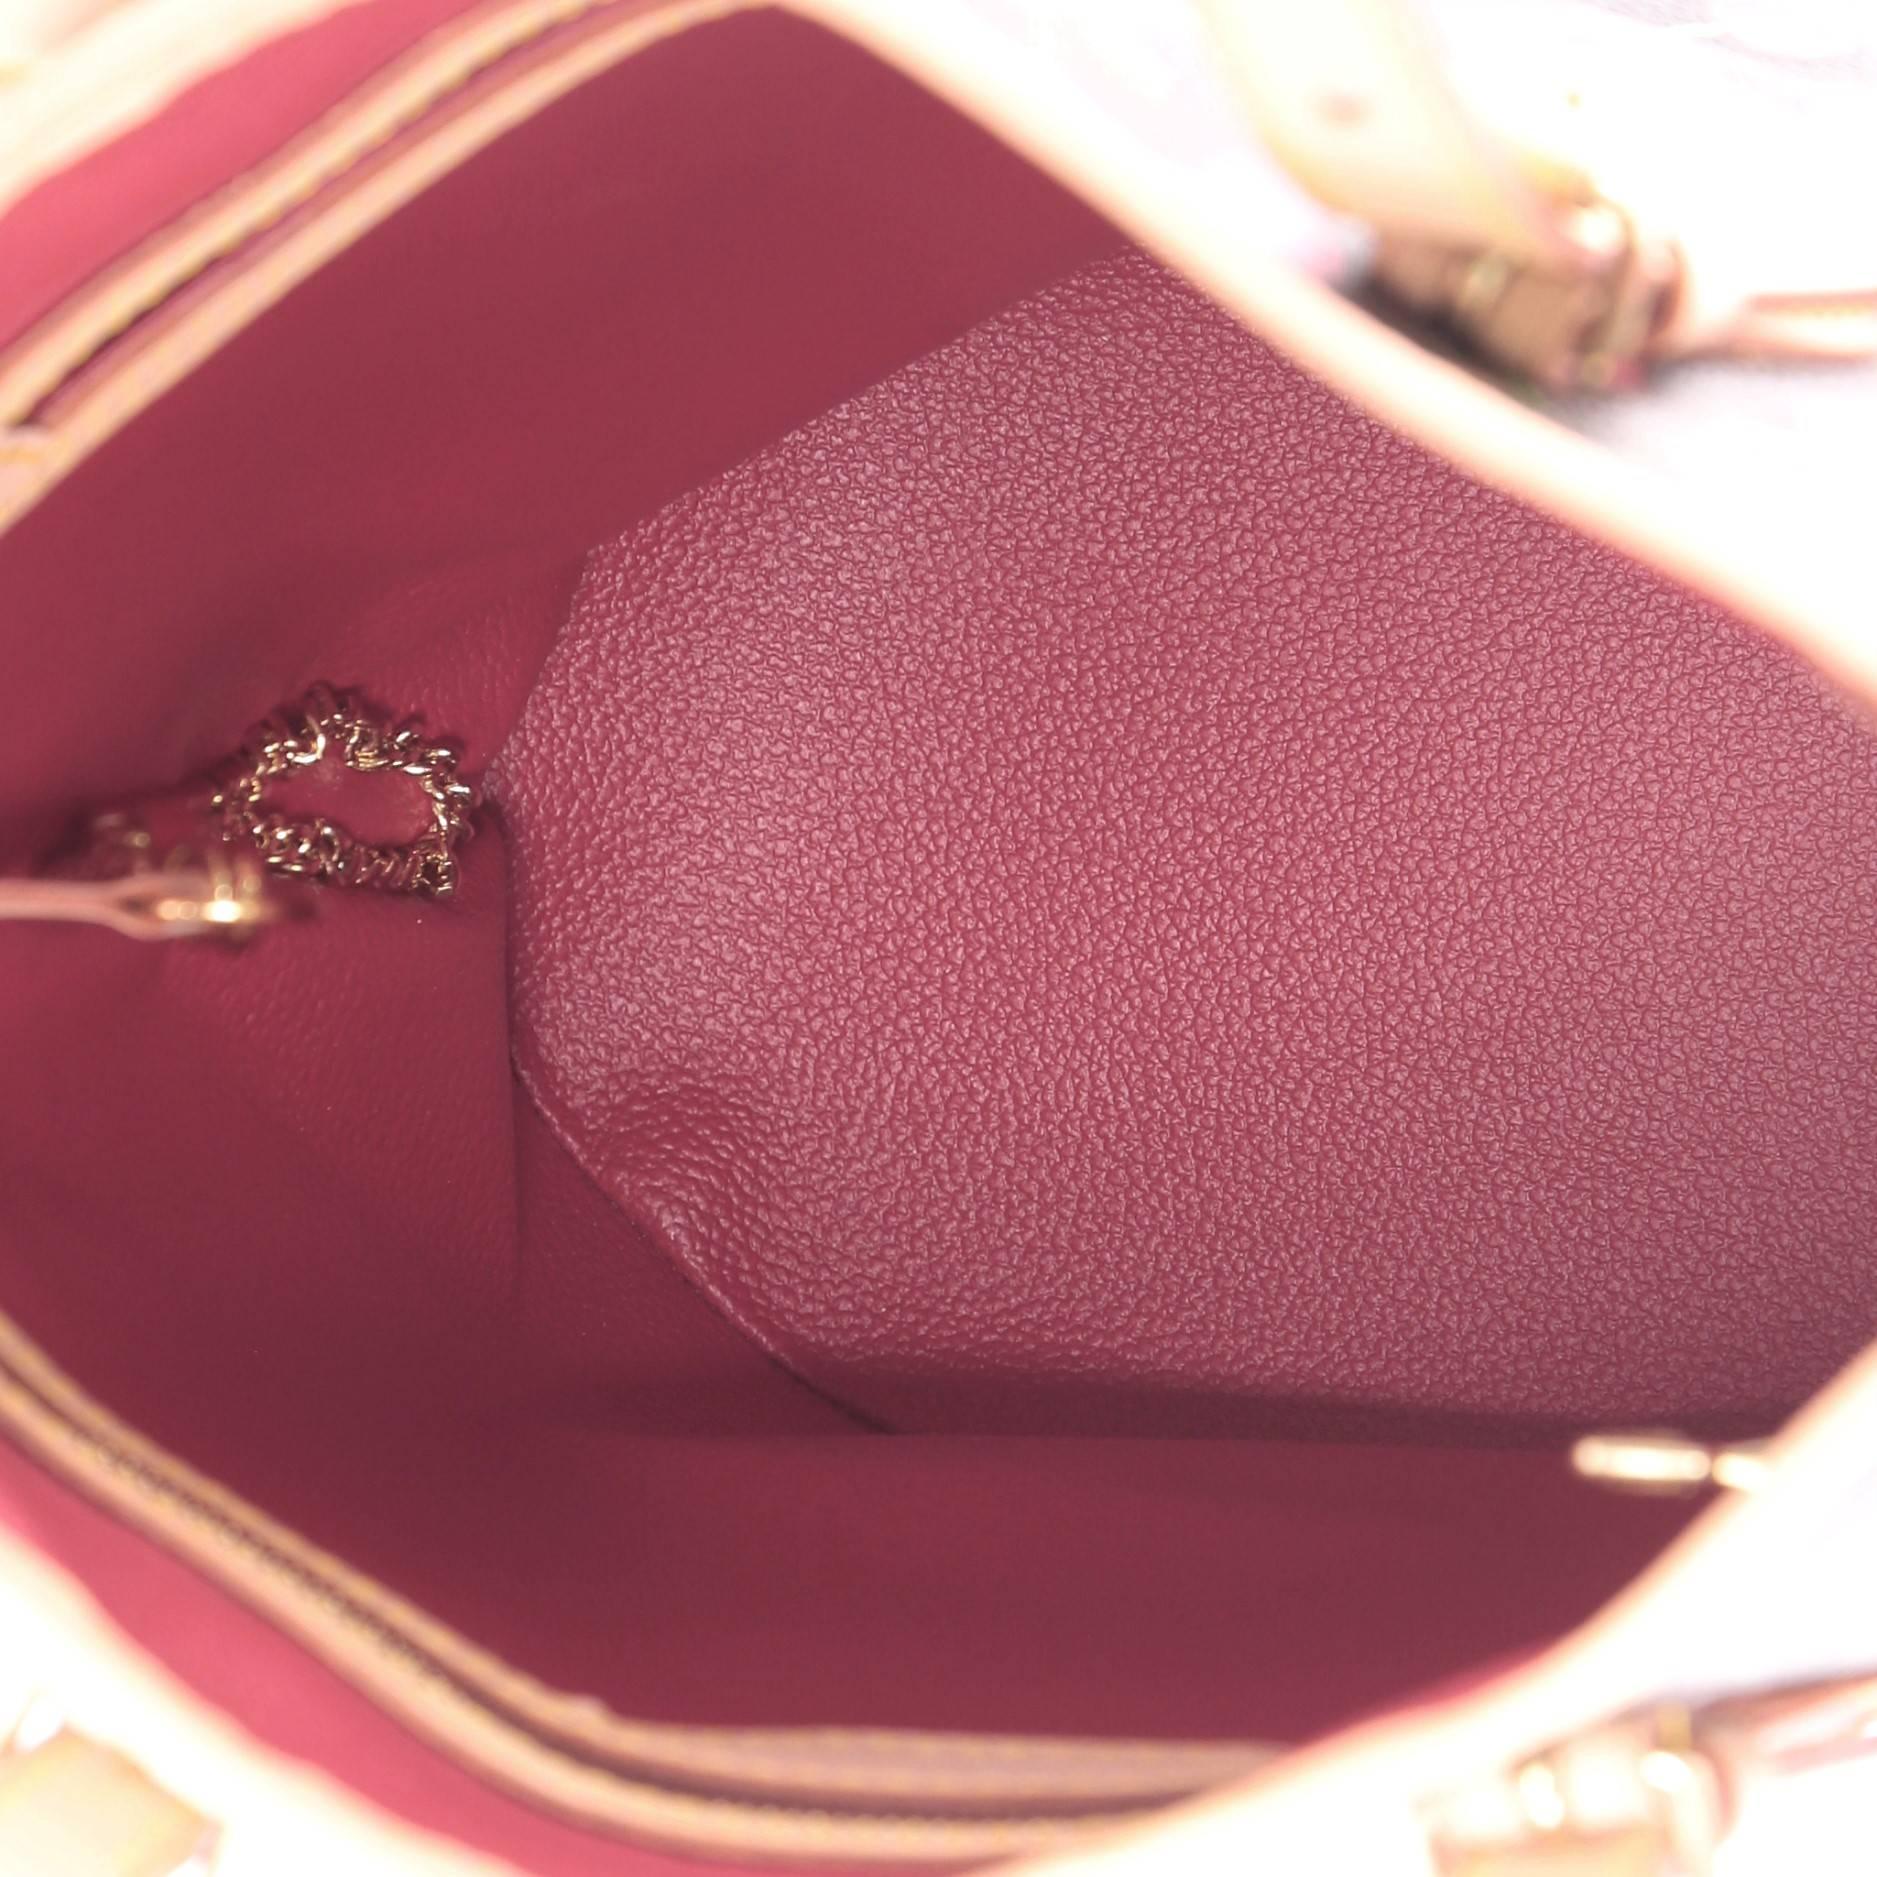 Louis Vuitton Bucket Bag Limited Edition Cerises 2